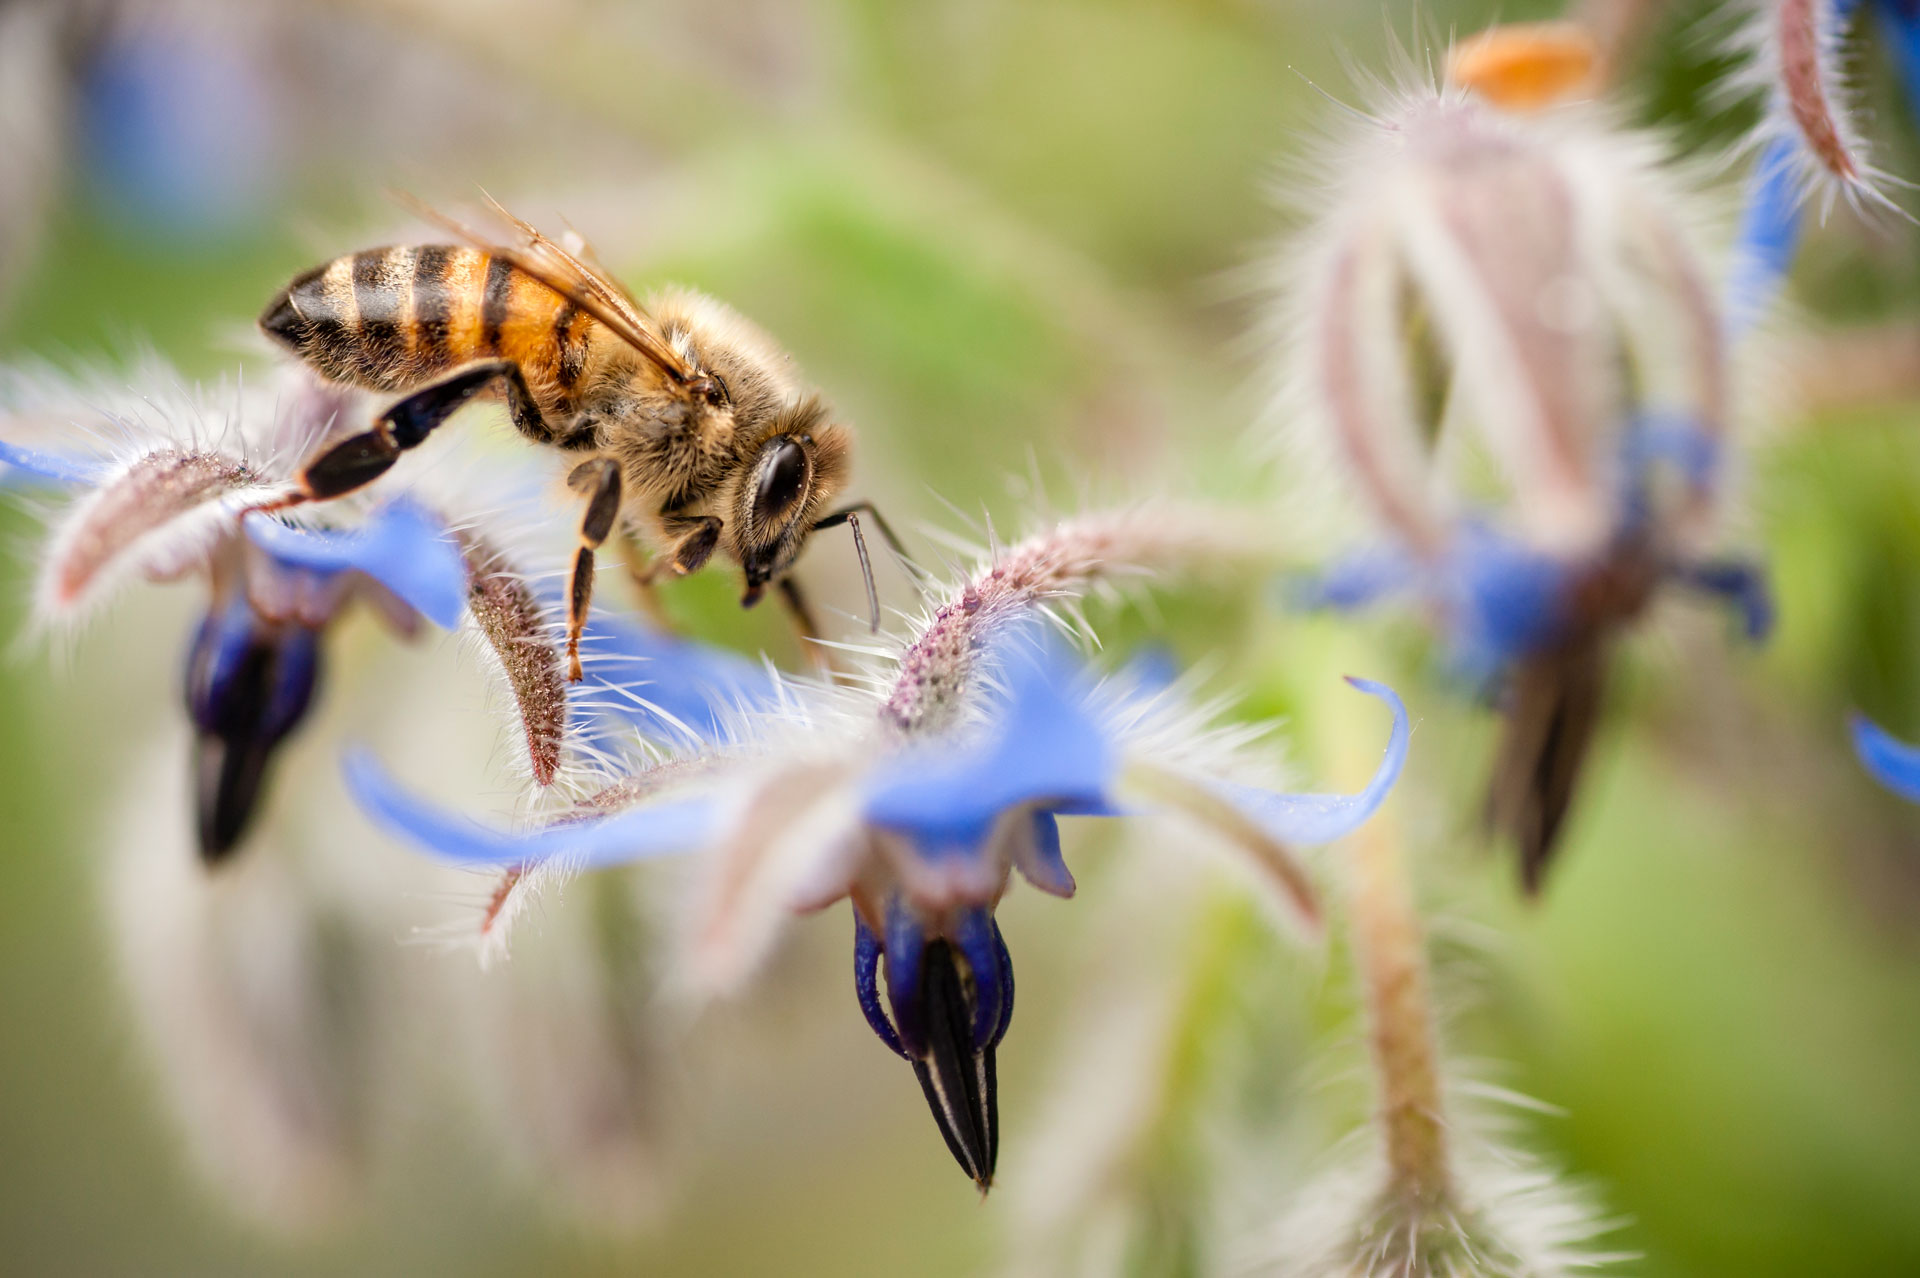 Les abeilles reconnaissent les membres de leur ruche grâce à des molécules présentes sur leur peau. © alessandrozocc